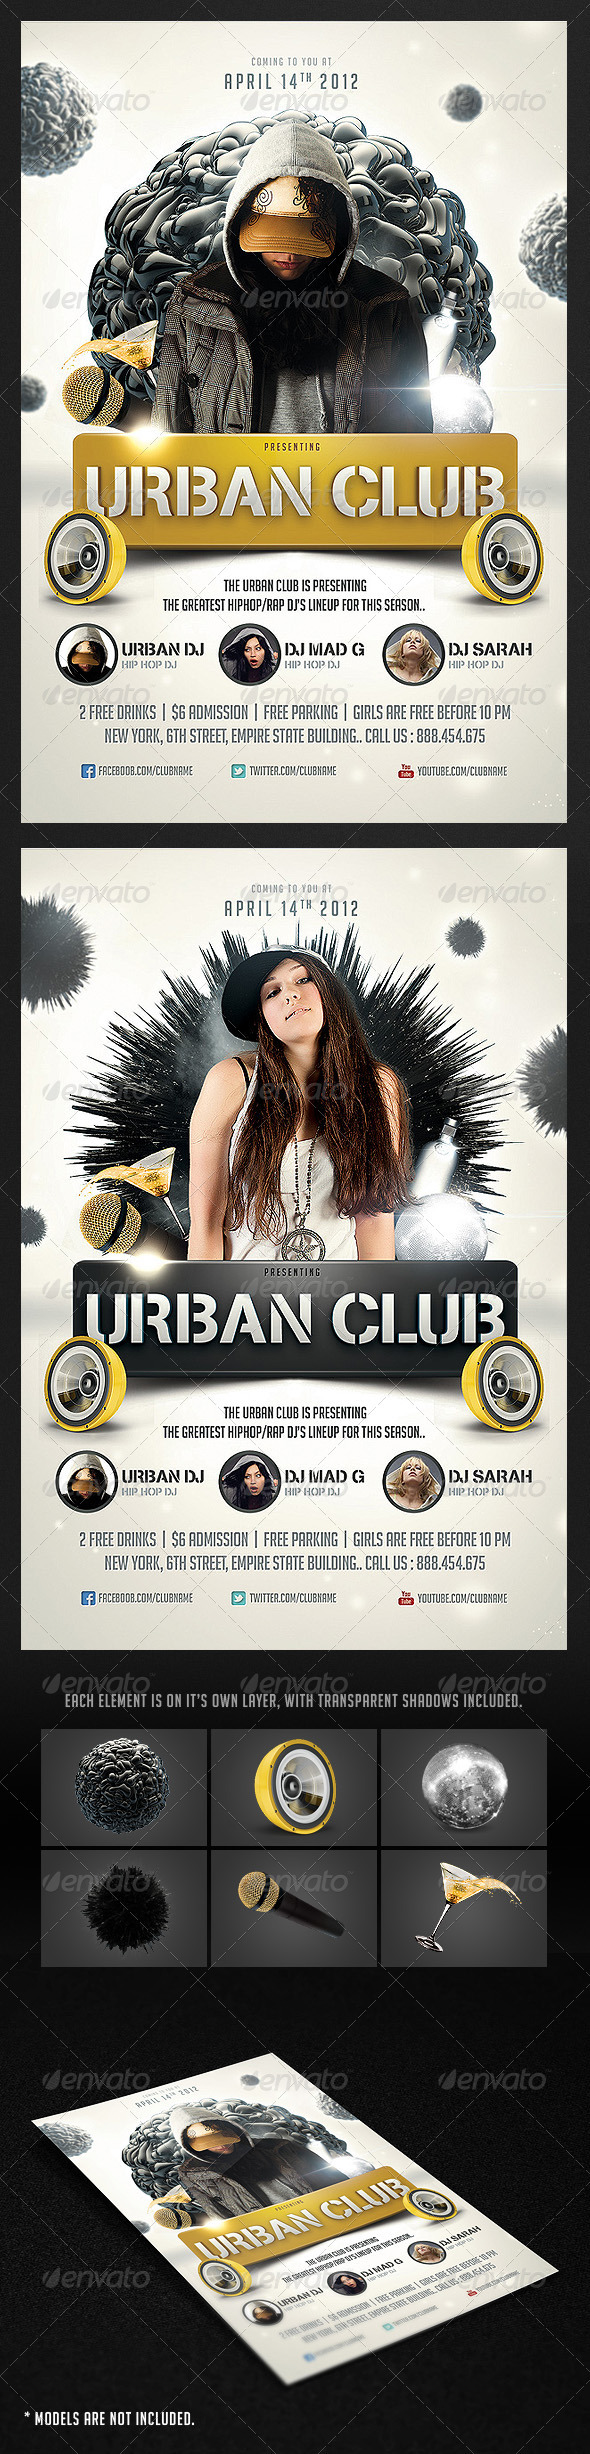 Urban Club Flyer